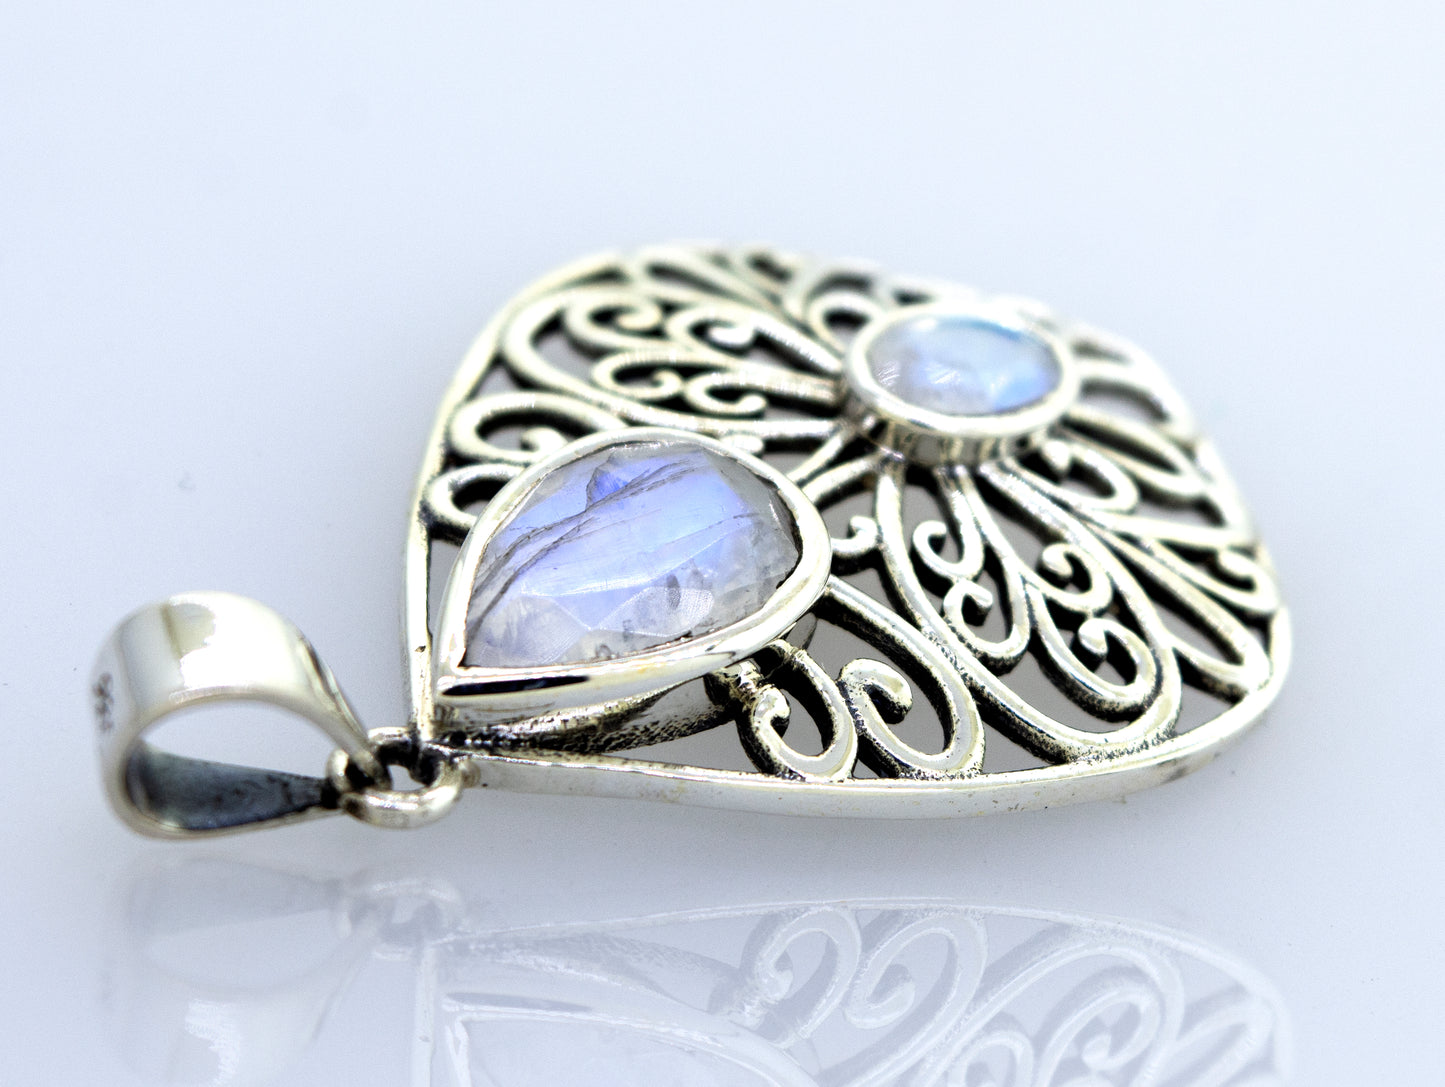 A Super Silver moonstone pendant featuring a delicate filigree design.